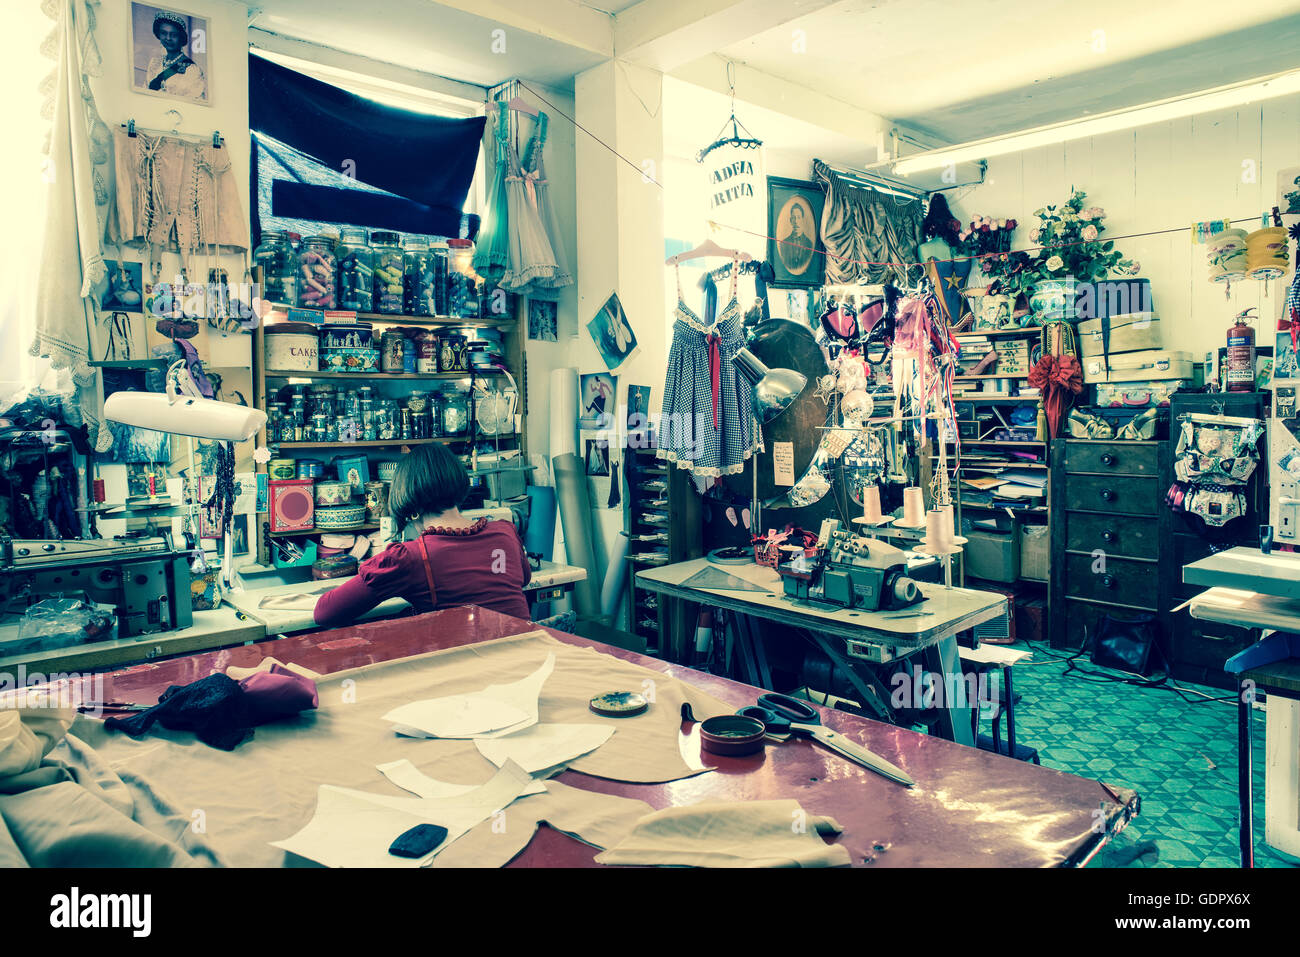 All'interno di un negozio di sartoria con una sarta con la schiena girata lavorando su una macchina da cucire. Foto Stock